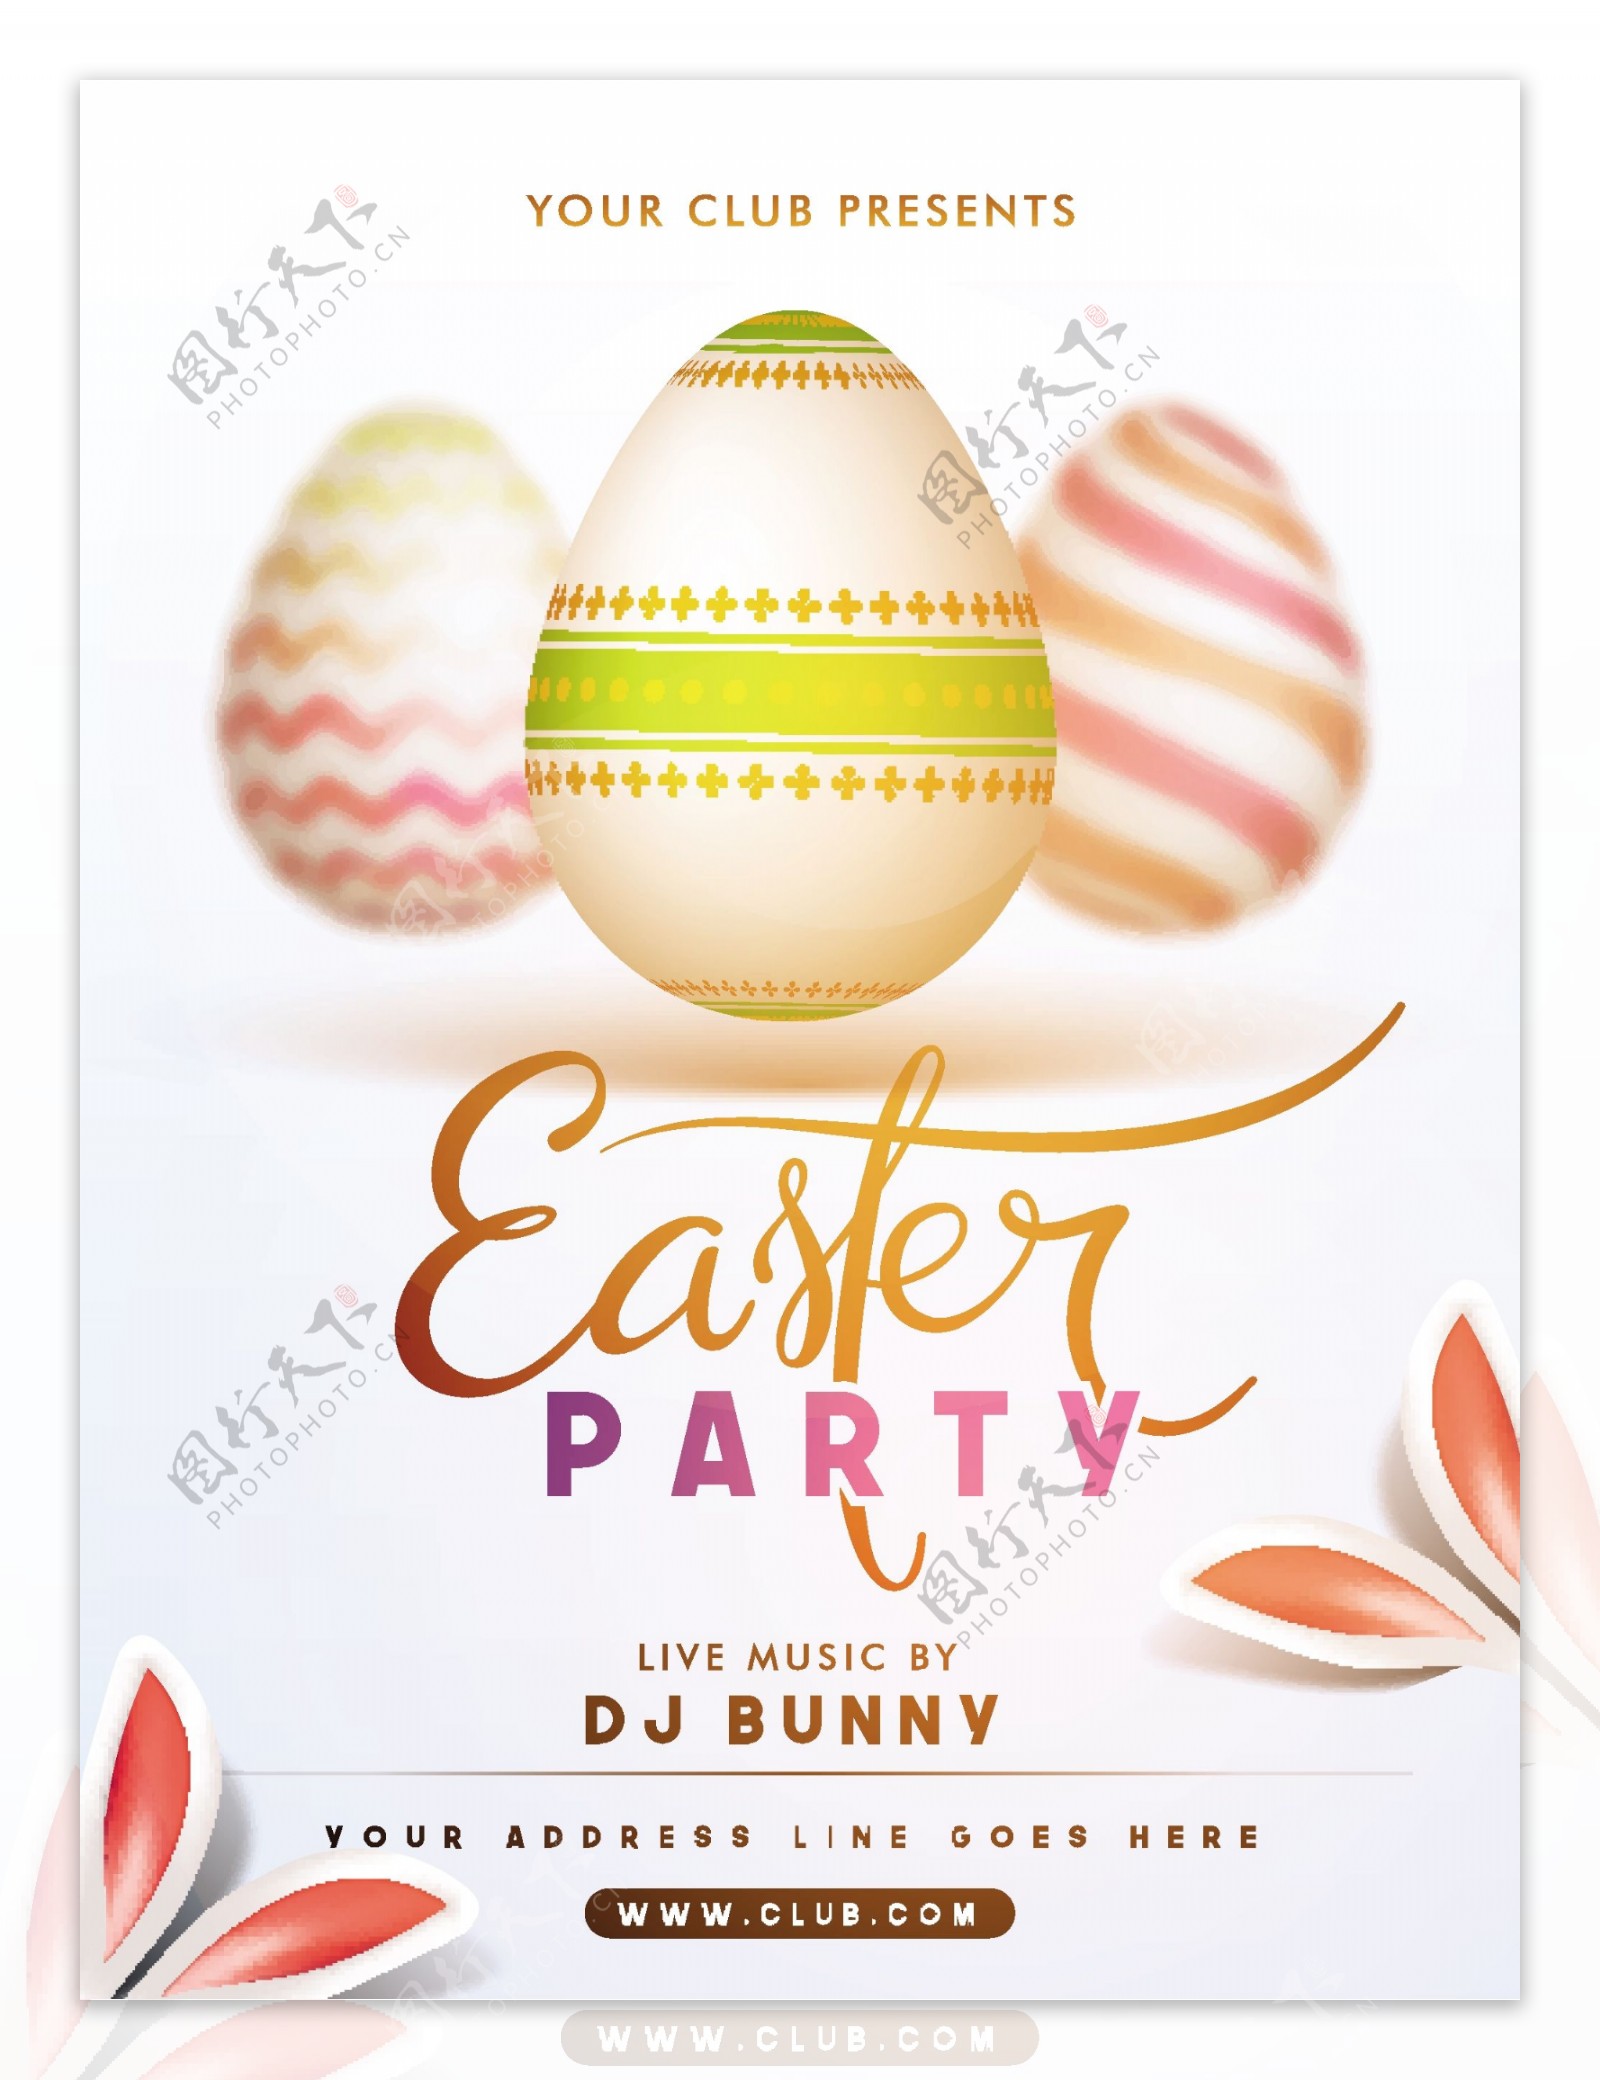 复活节派对海报与鸡蛋和装饰兔耳朵